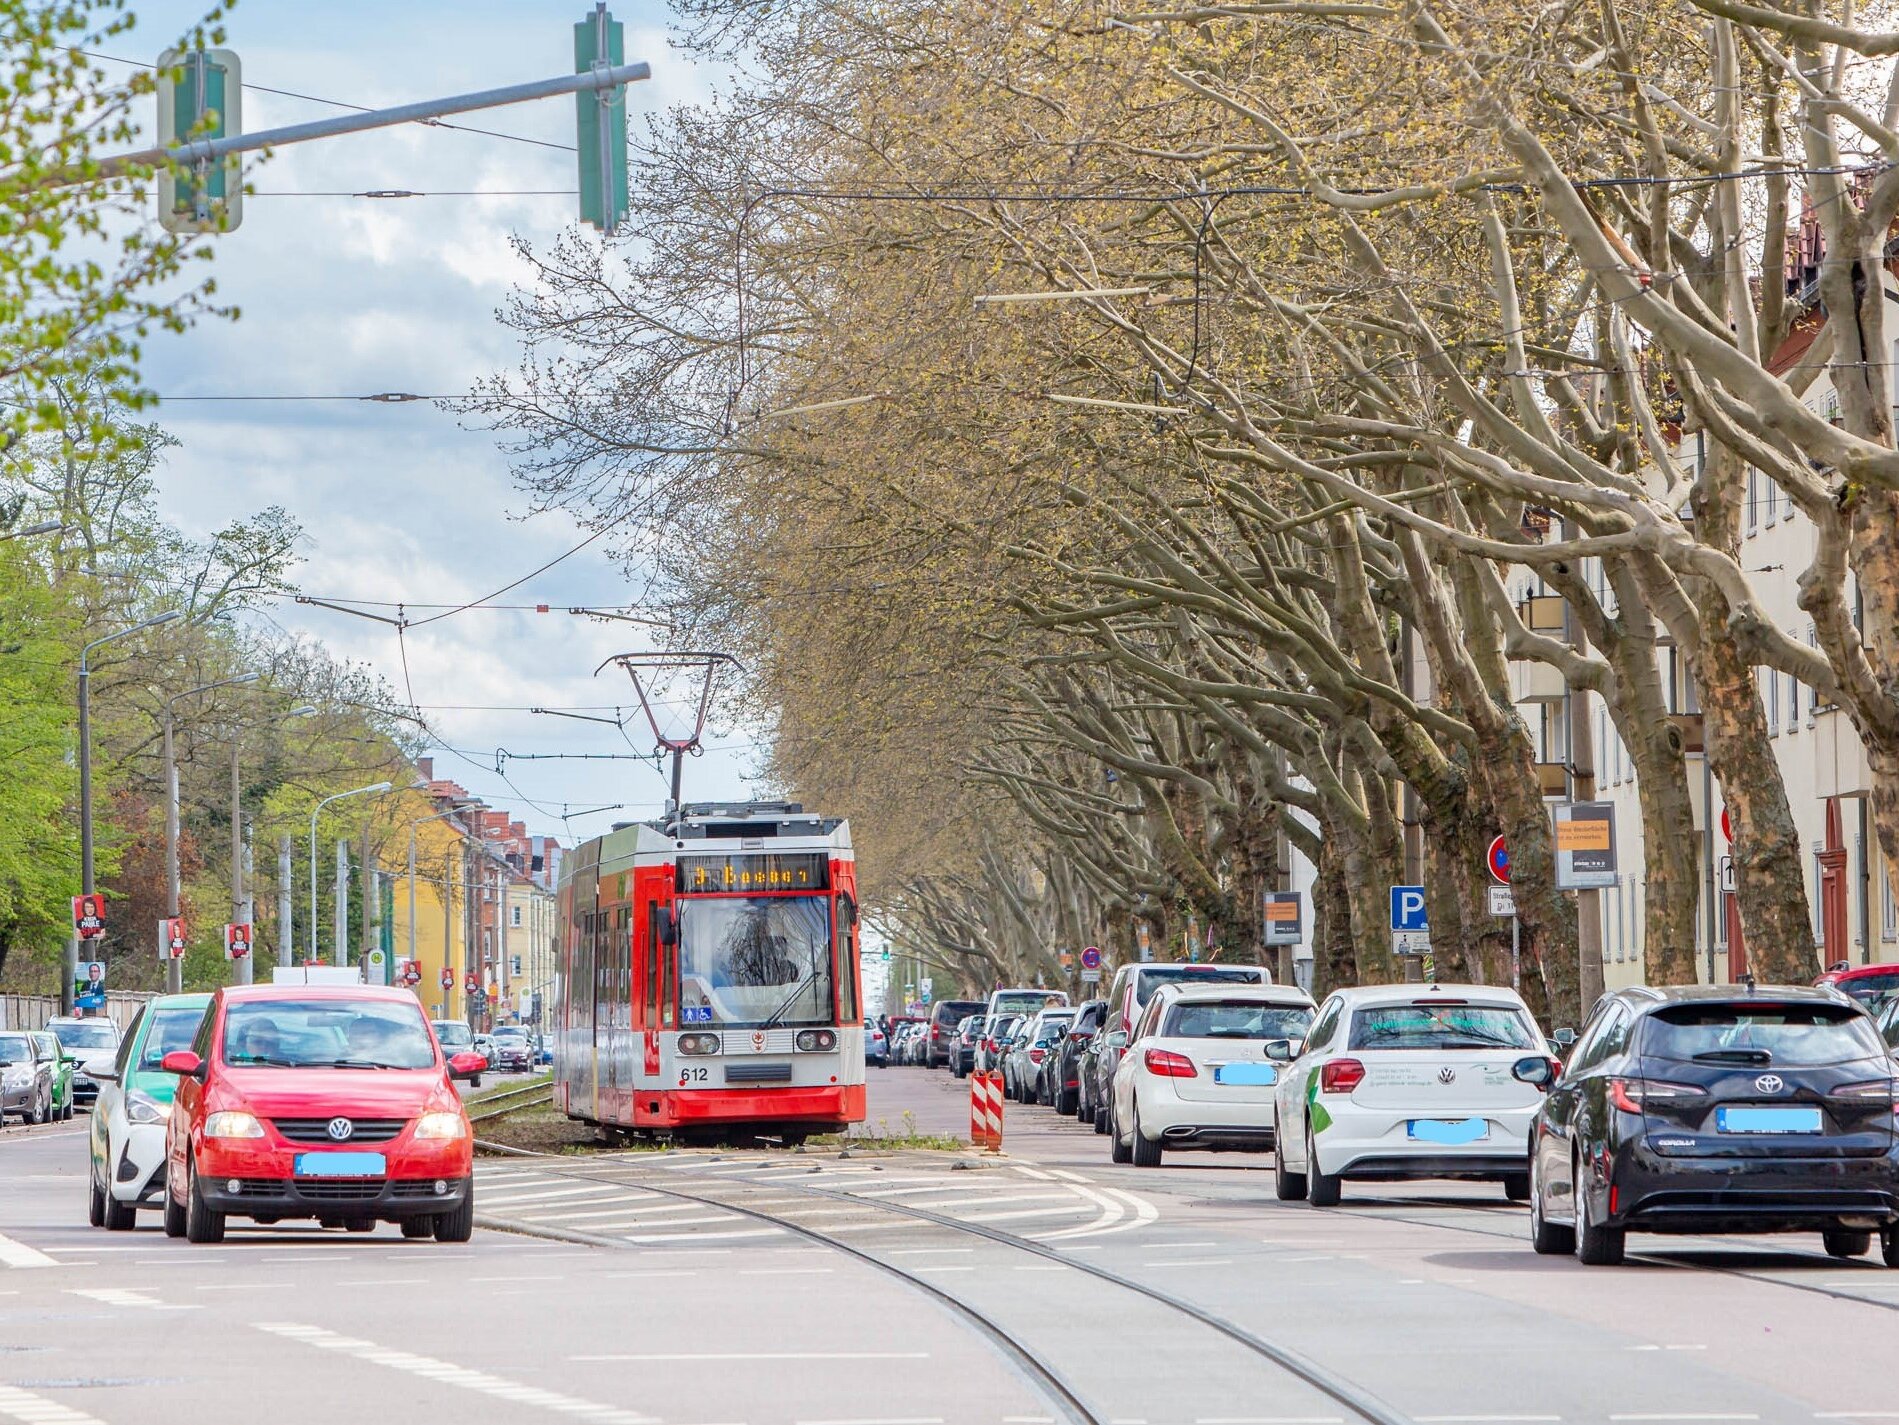 Pkw- und Straßenbahnverkehr entlang der Beesener Straße mit Baumallee an den Straßenrändern